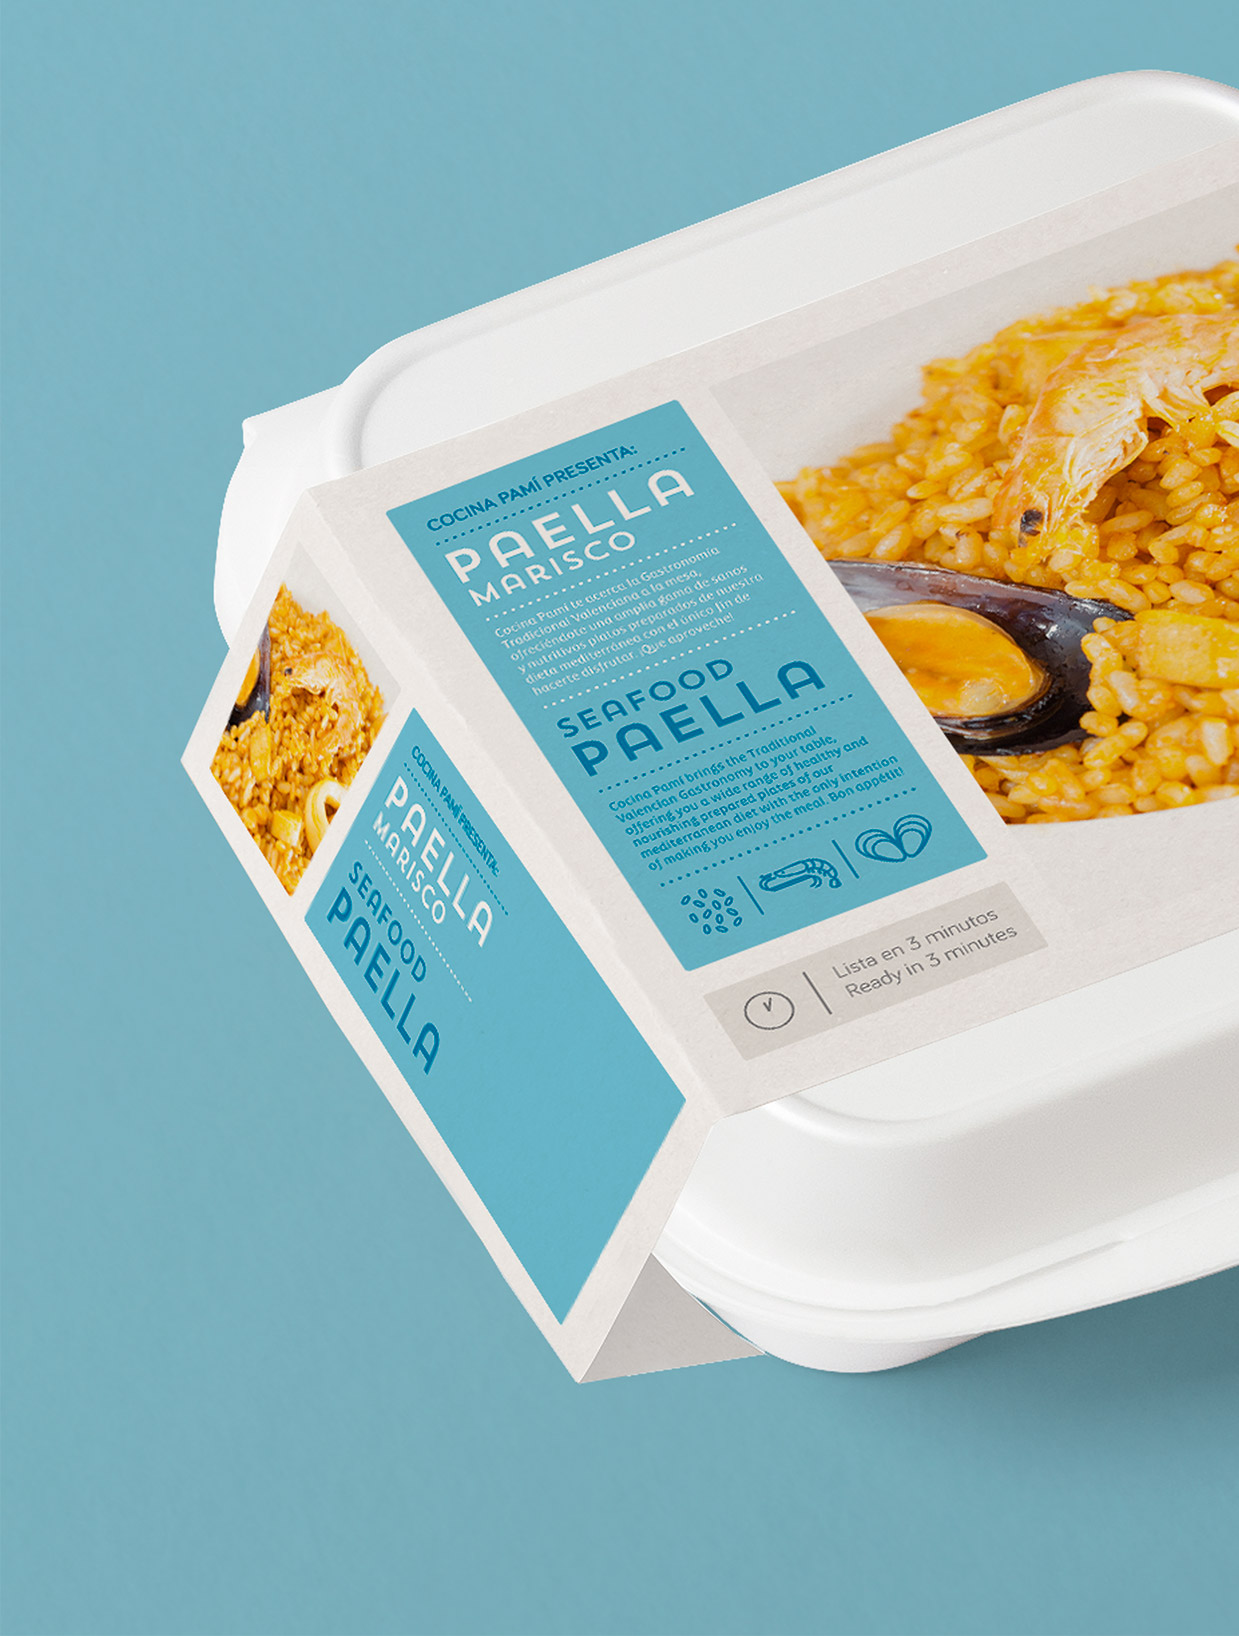 Diseño de packaging alimentación Gastraval - Estudio de diseño gráfico en Valencia Pixelarte